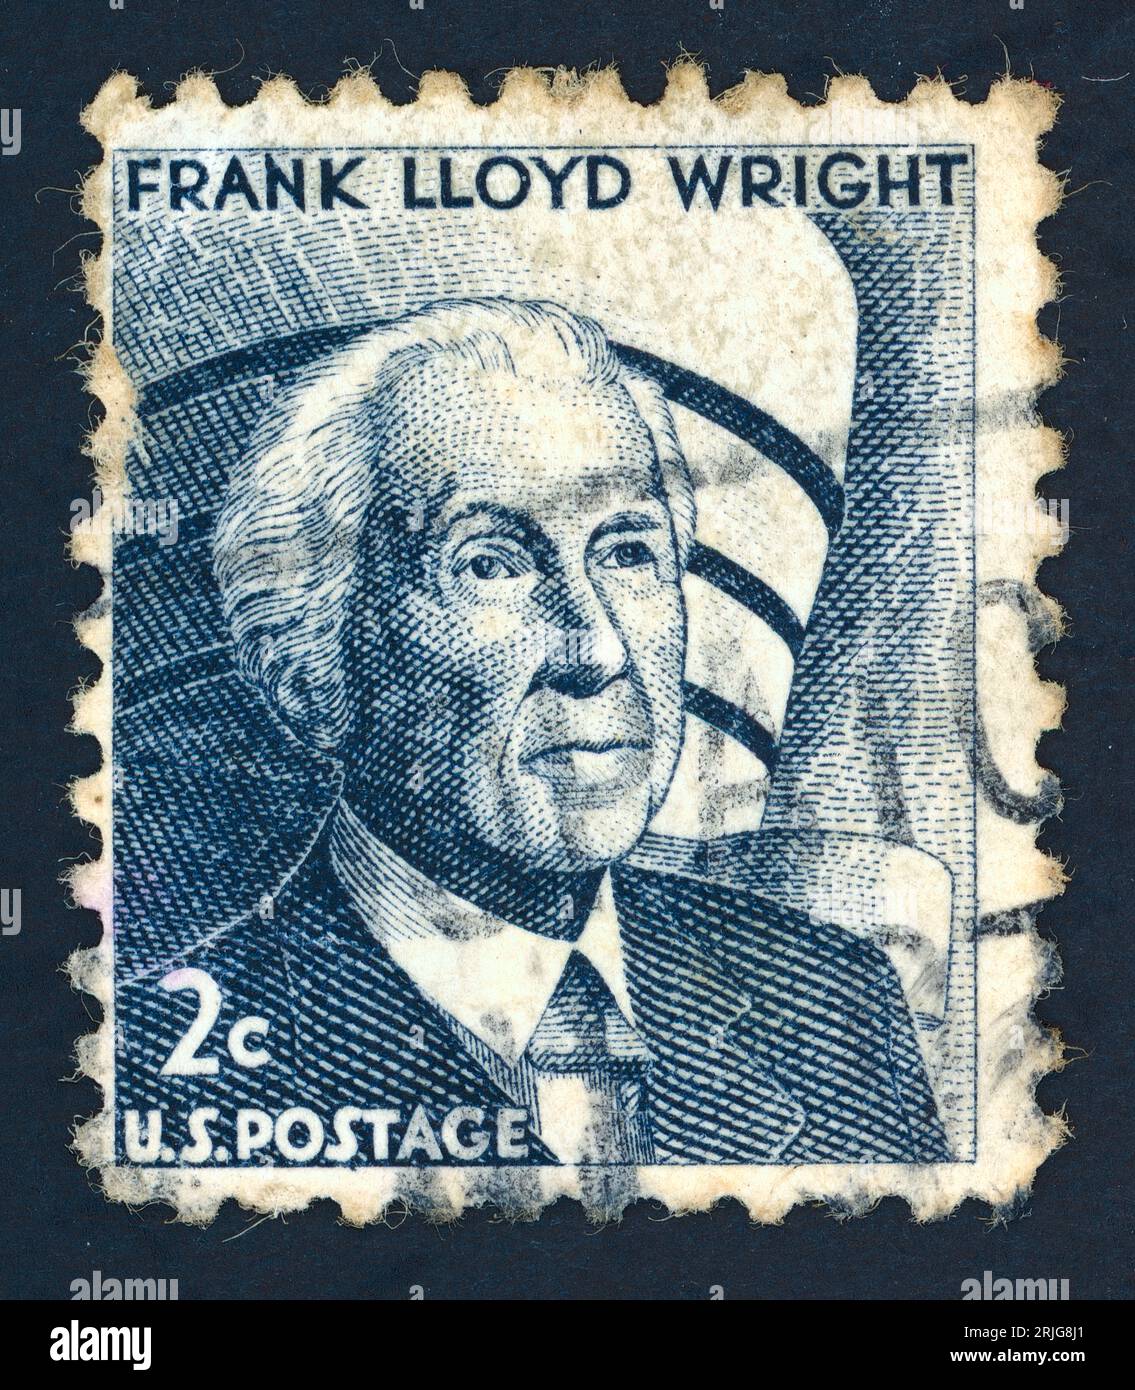 Frank Lloyd Wright (1867 – 1959). Timbre-poste émis aux États-Unis en 1966. Frank Lloyd Wright était un architecte et écrivain, un maître très créatif de l'architecture américaine. Son « style prairie » est devenu la base de la conception résidentielle du 20e siècle aux États-Unis. Banque D'Images